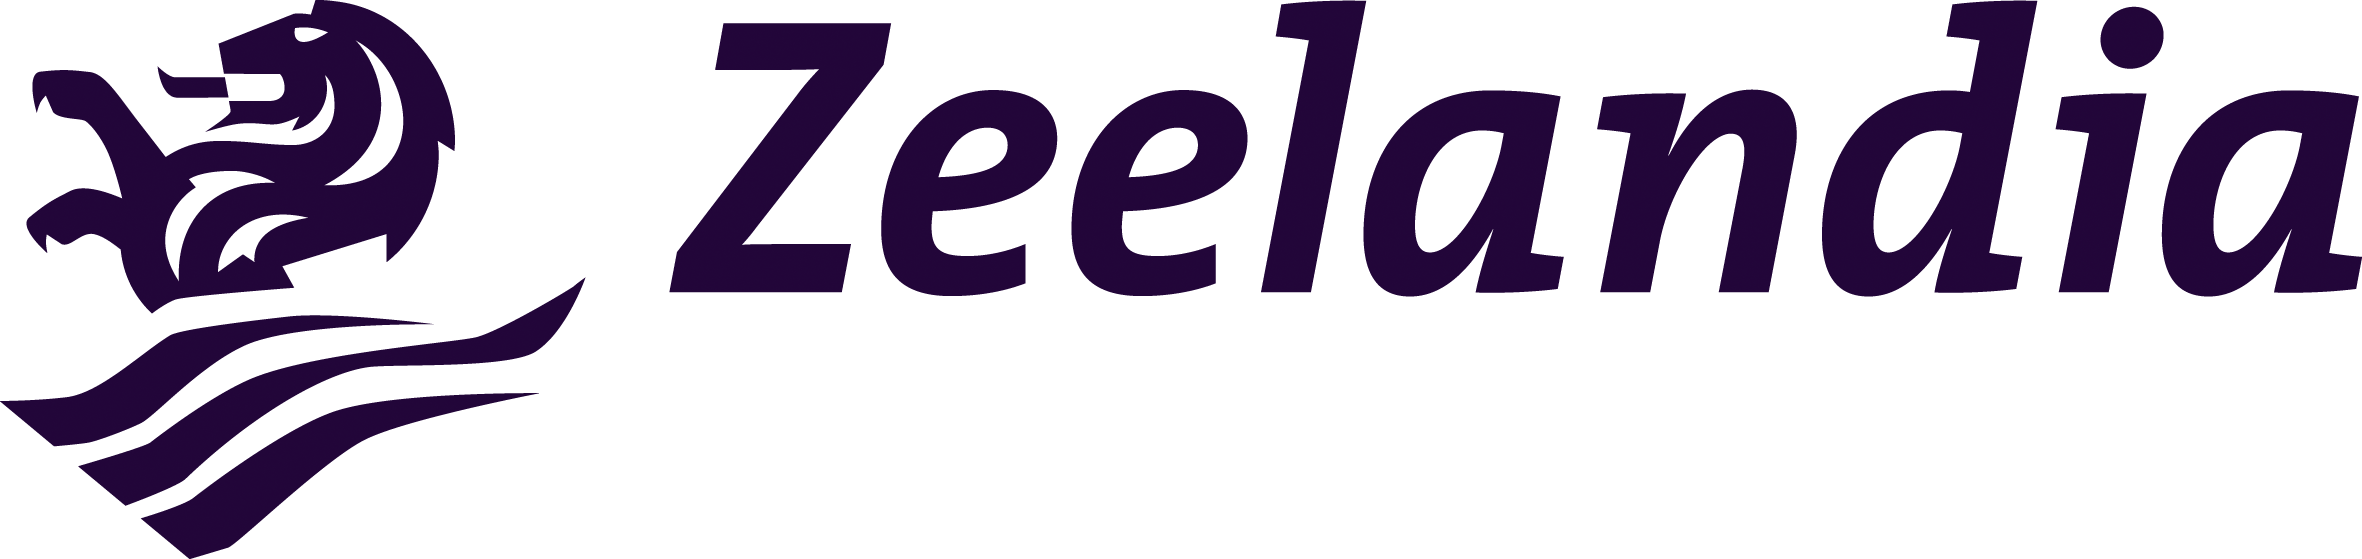 Zeelandia_logo